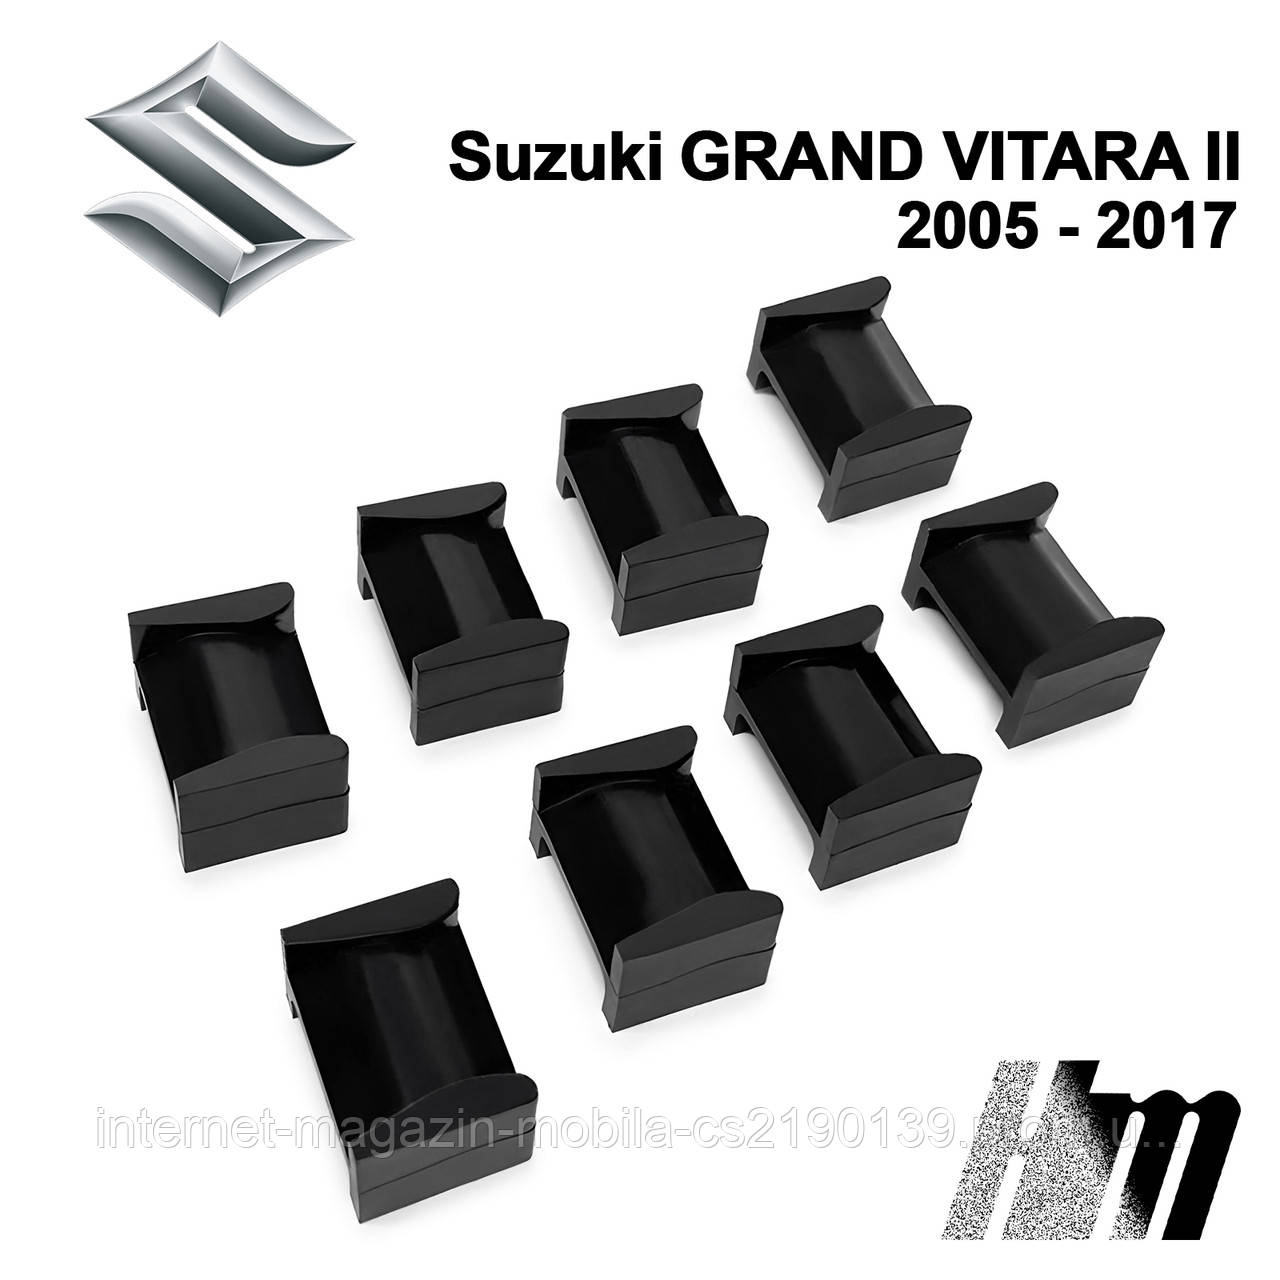 Ремкомплект обмежувача дверей Suzuki GRAND VITARA (II) 2005 — 2017, фіксатори, вкладки, втулки, сухарі